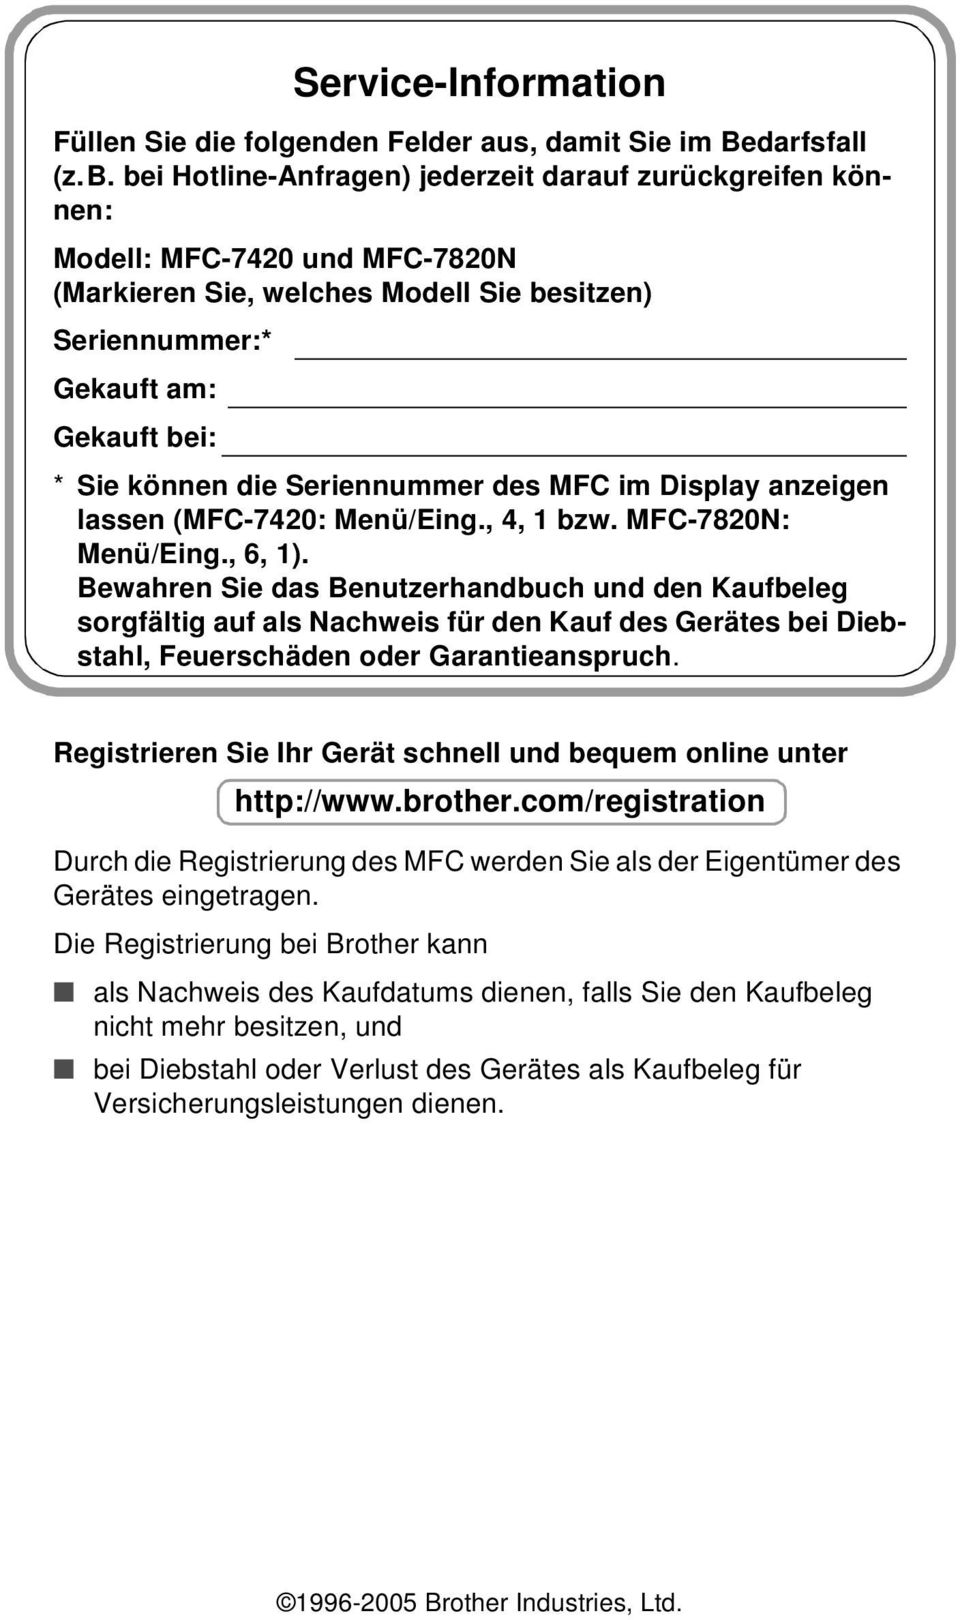 Seriennummer des MFC im Display anzeigen lassen (MFC-7420: Menü/Eing., 4, 1 bzw. MFC-7820N: Menü/Eing., 6, 1).